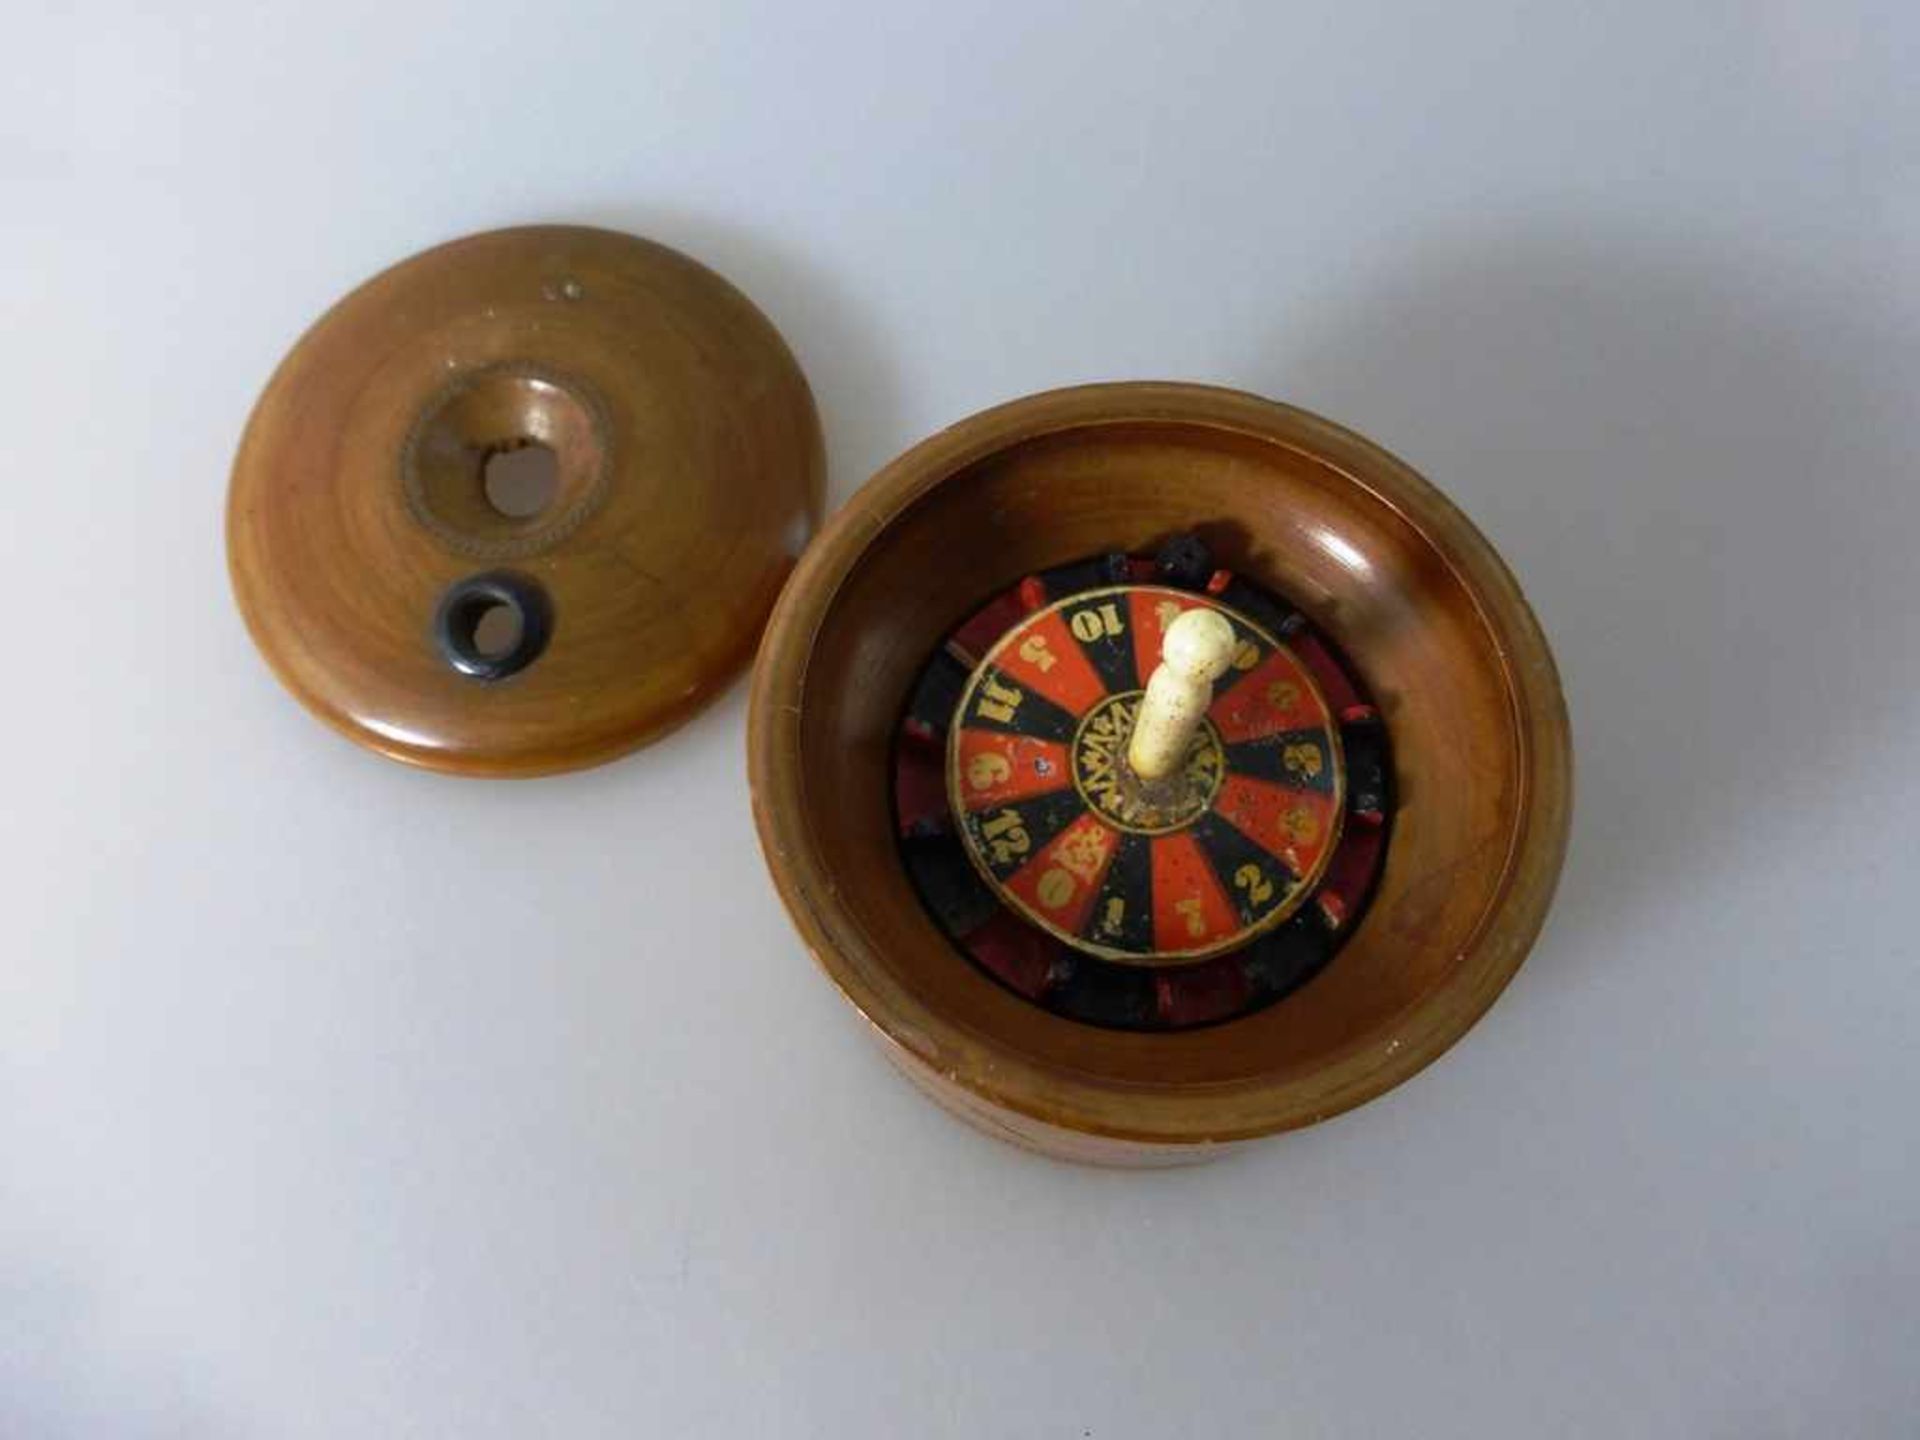 Kleines Roulette Spiel um 1900, Holz / Bein, d. 8,5cm, h. 7cm